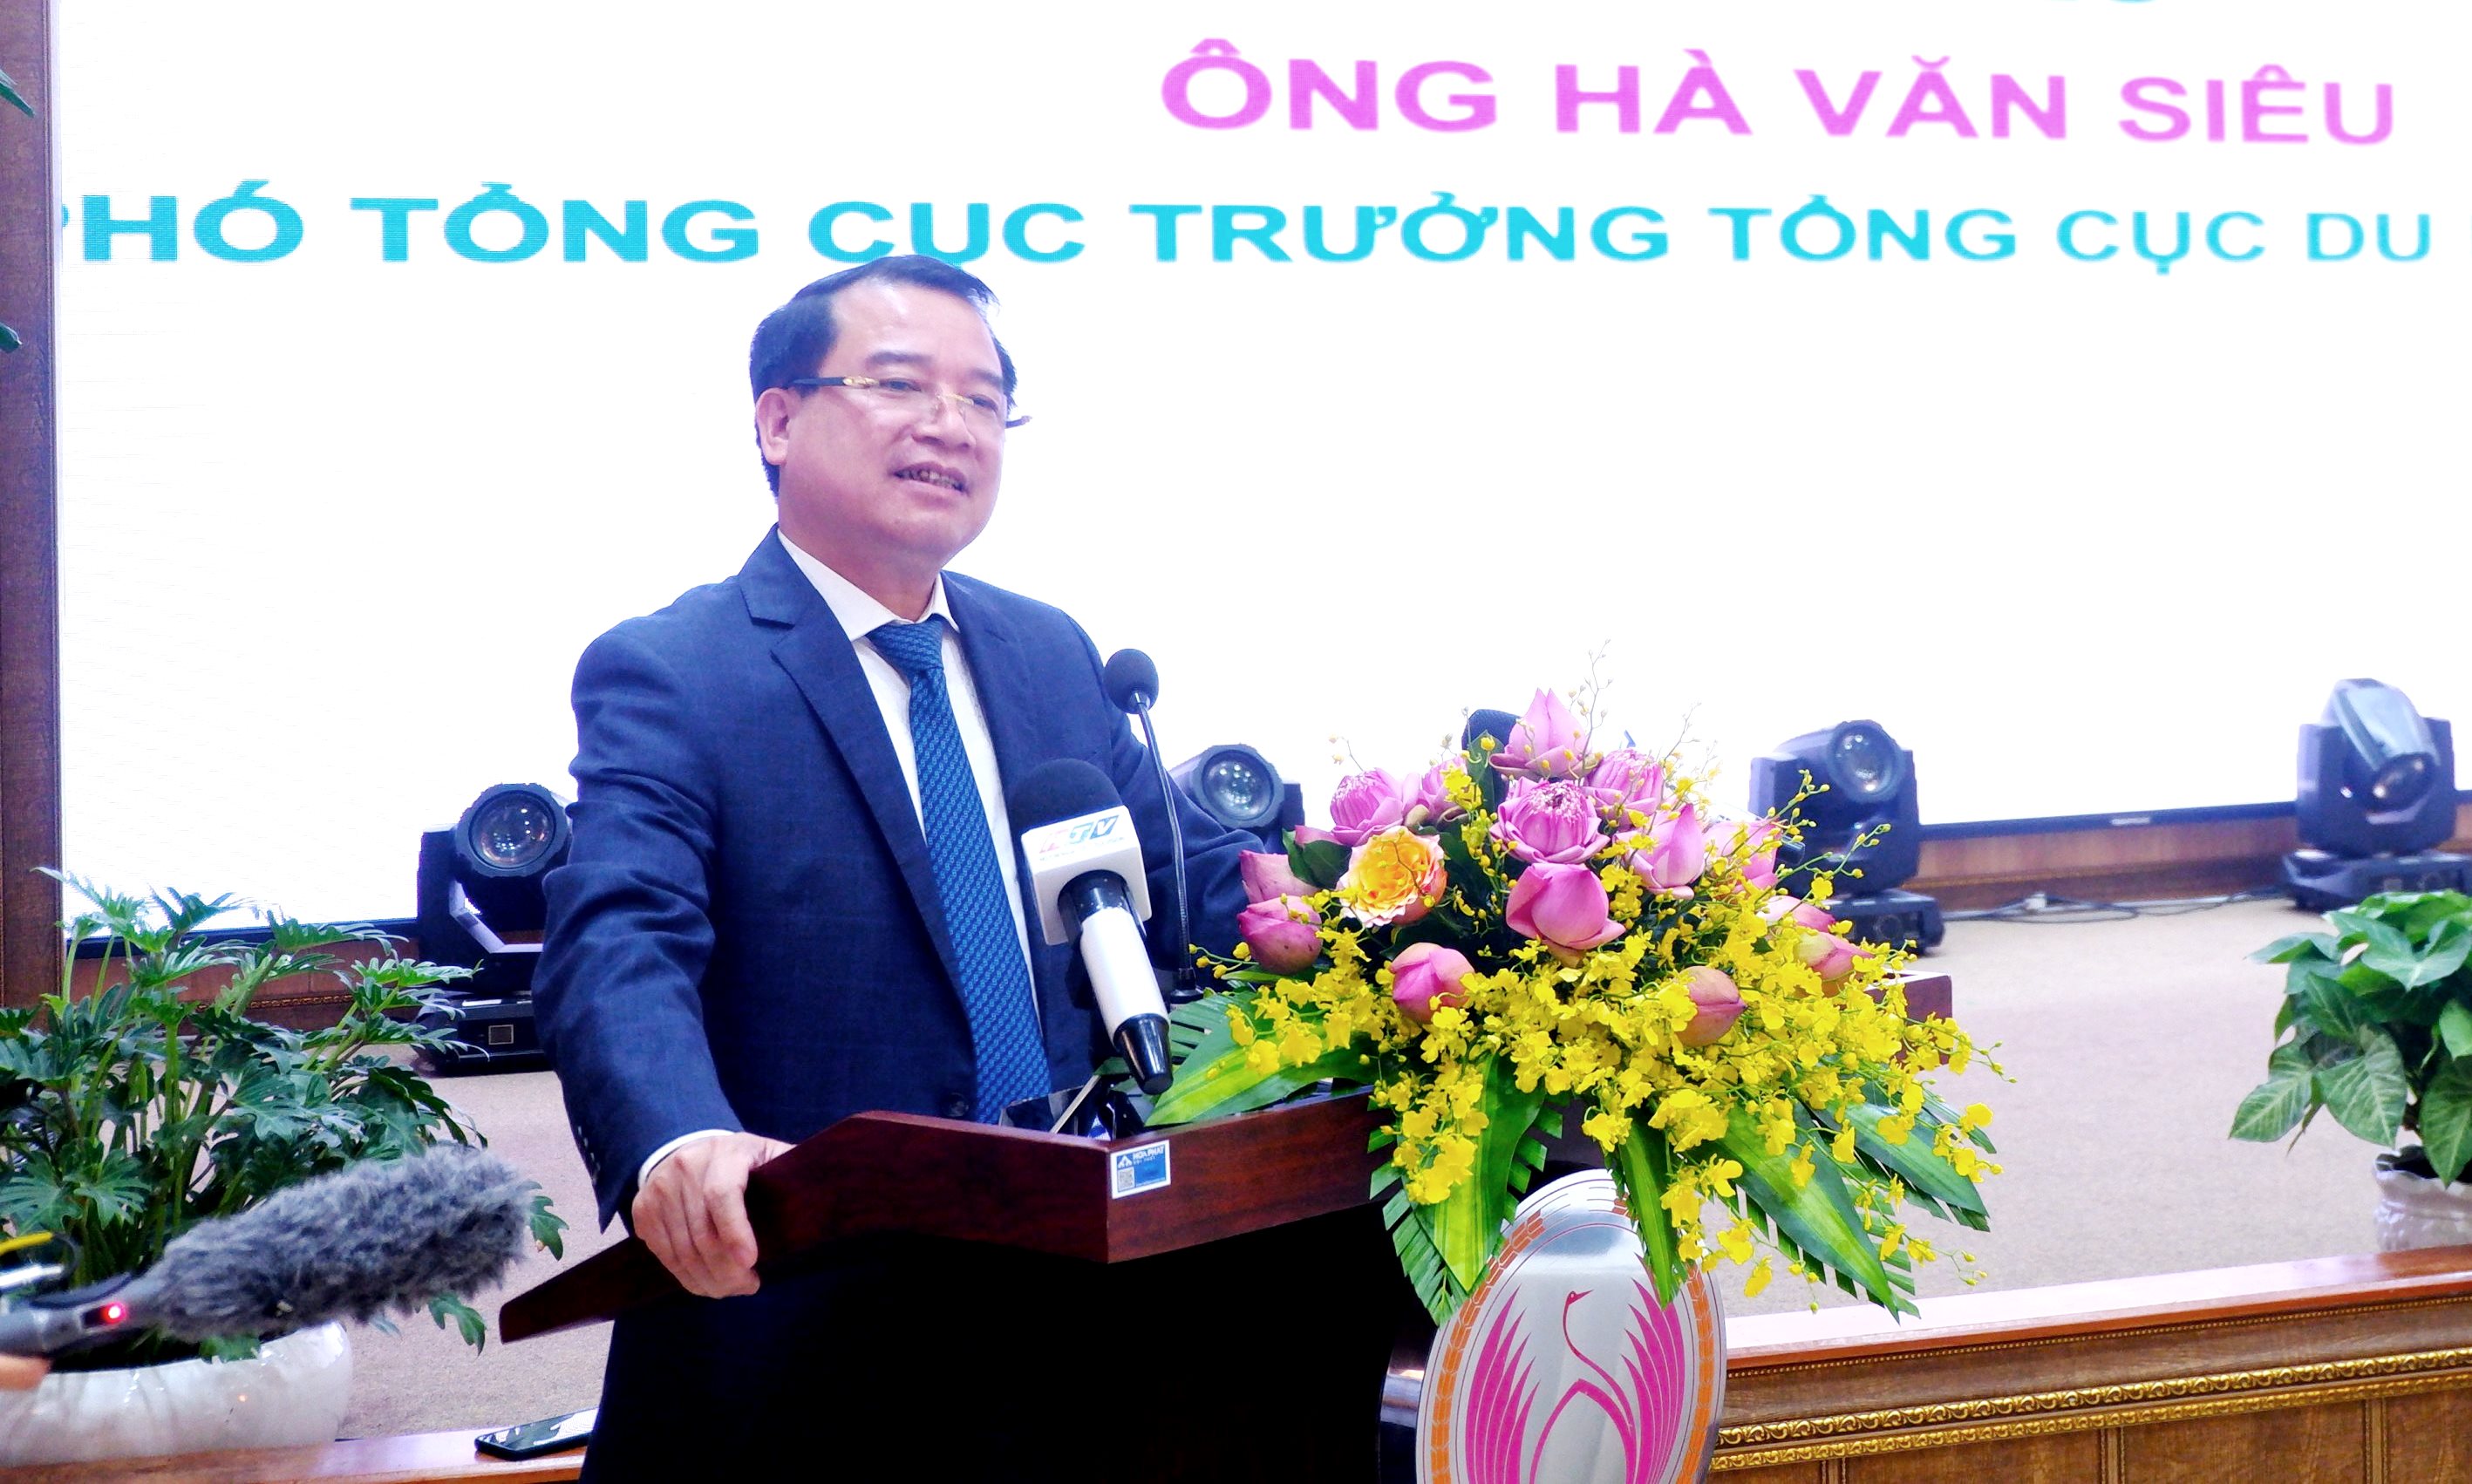  Phó Tổng cục trưởng TCDL Hà Văn Siêu phát biểu tại Diễn đàn